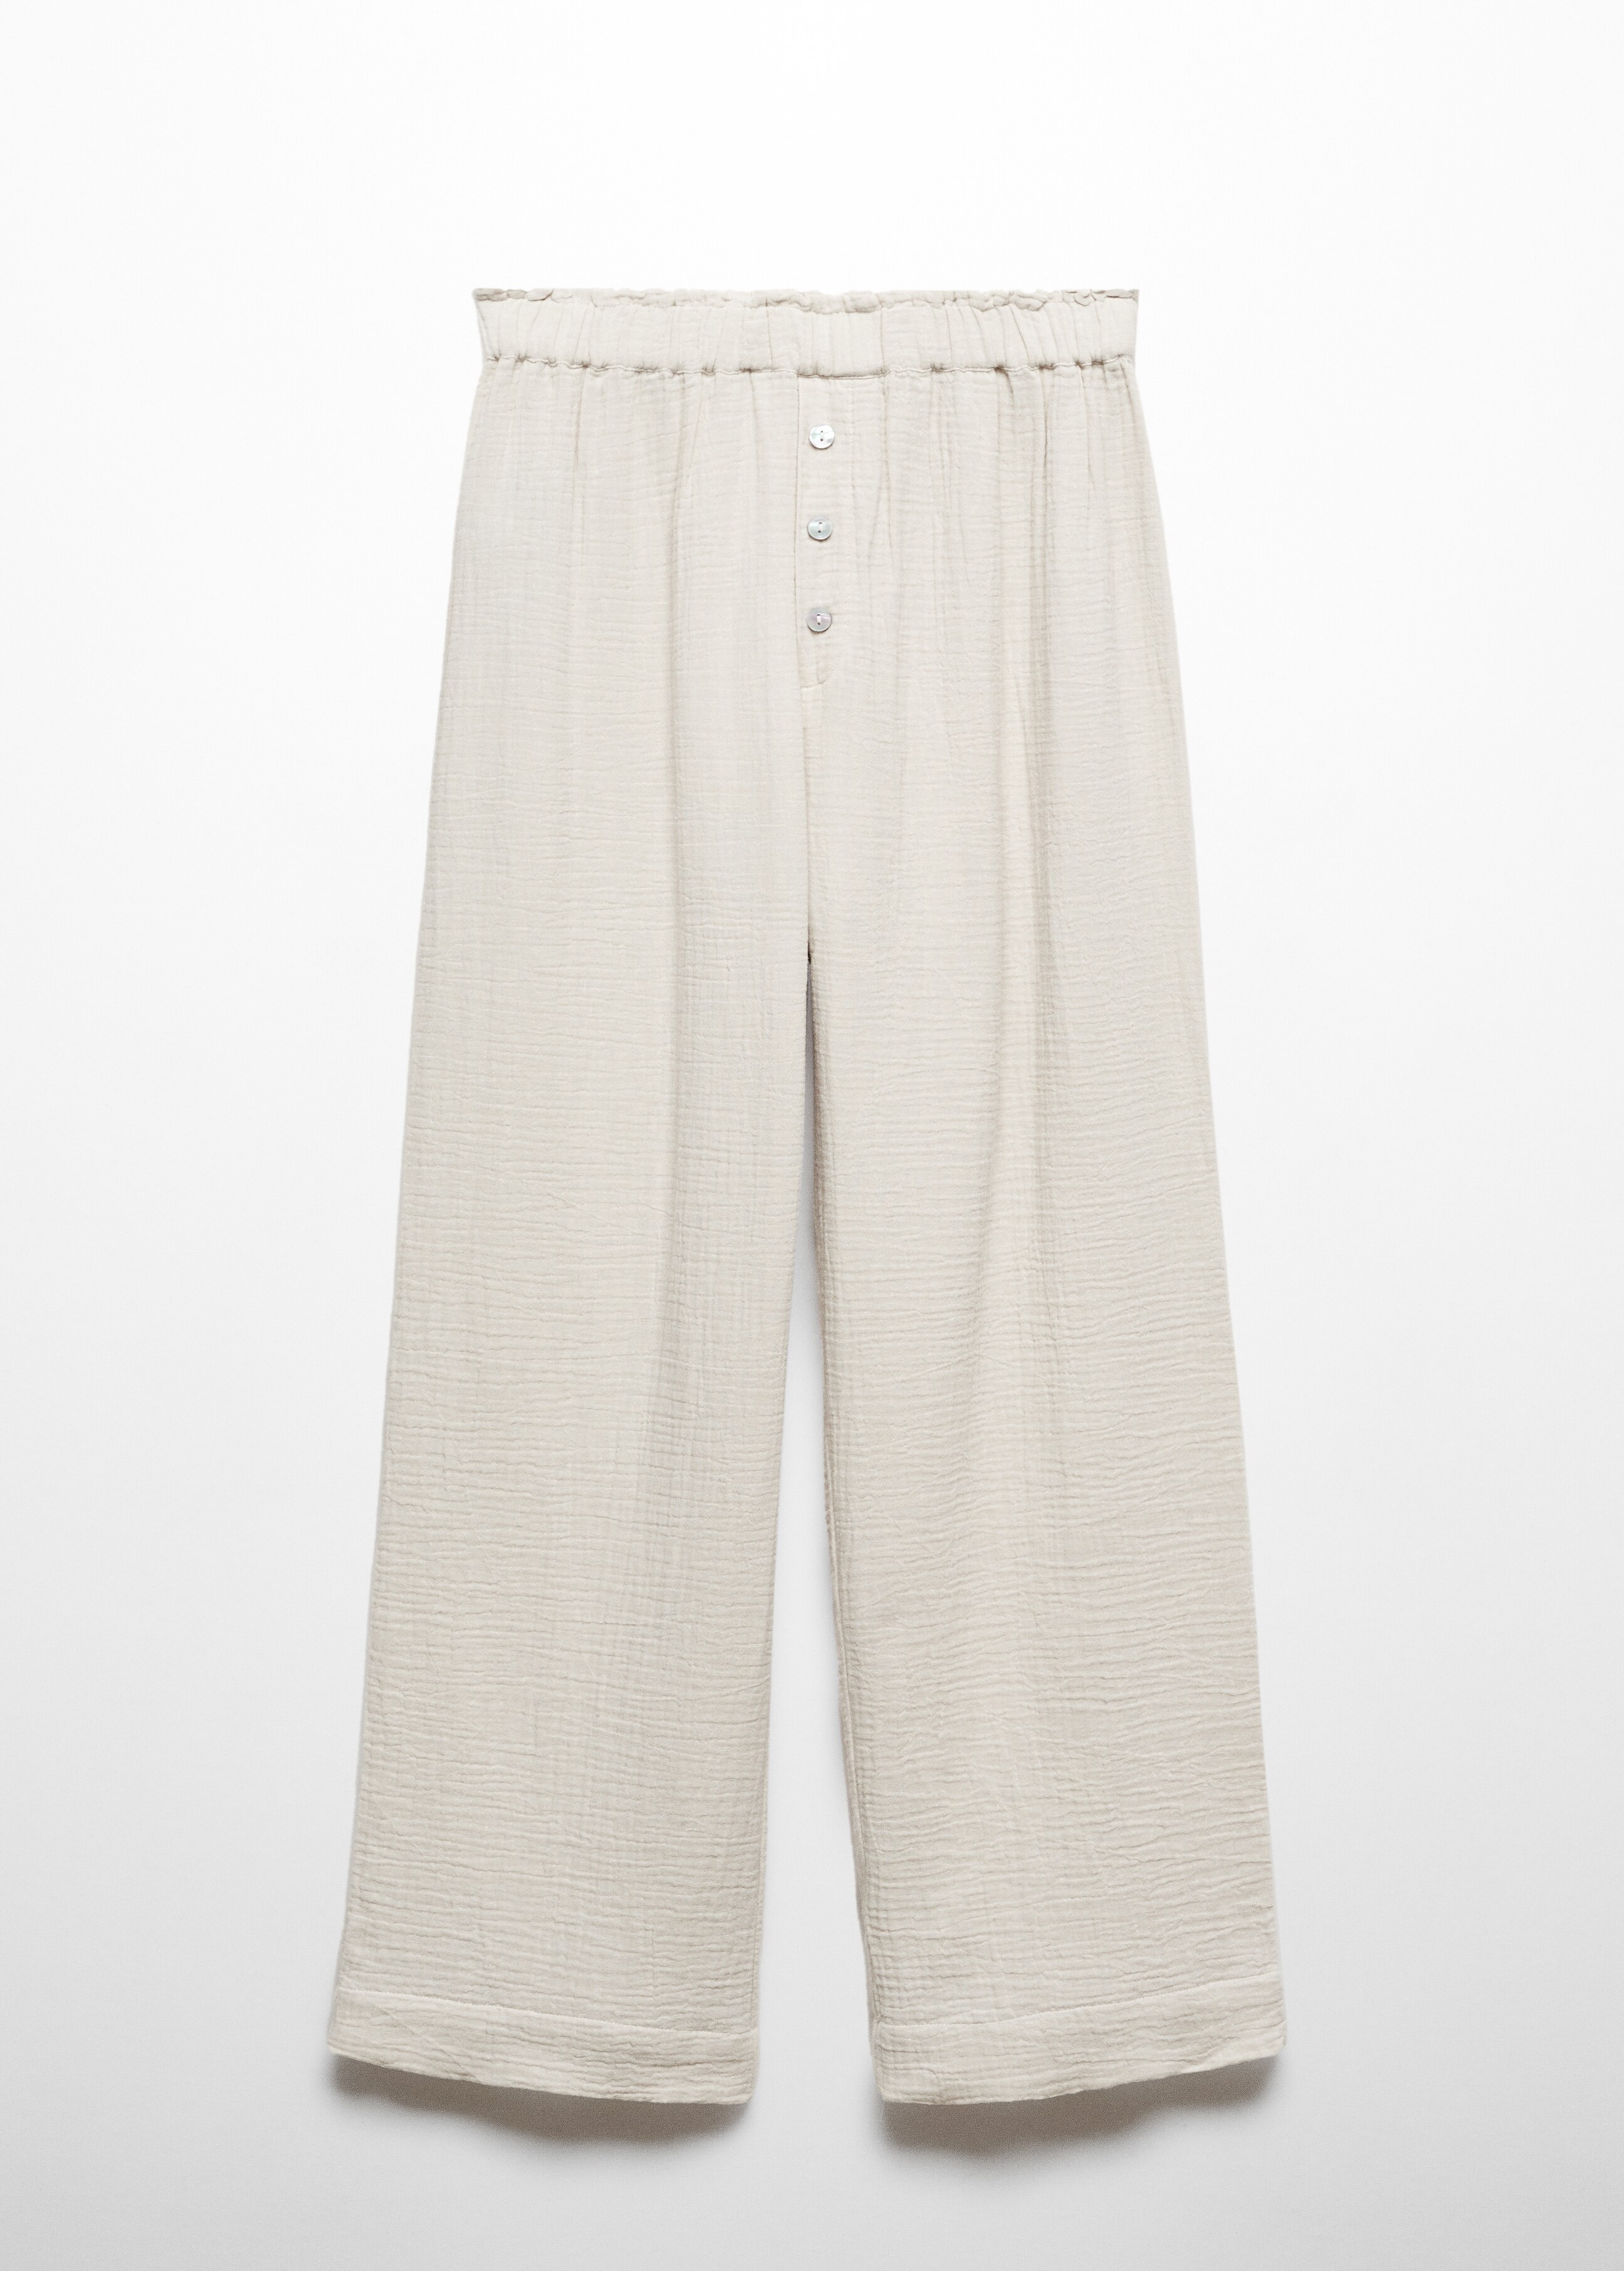 Pantalón pijama gasa de algodón - Artículo sin modelo